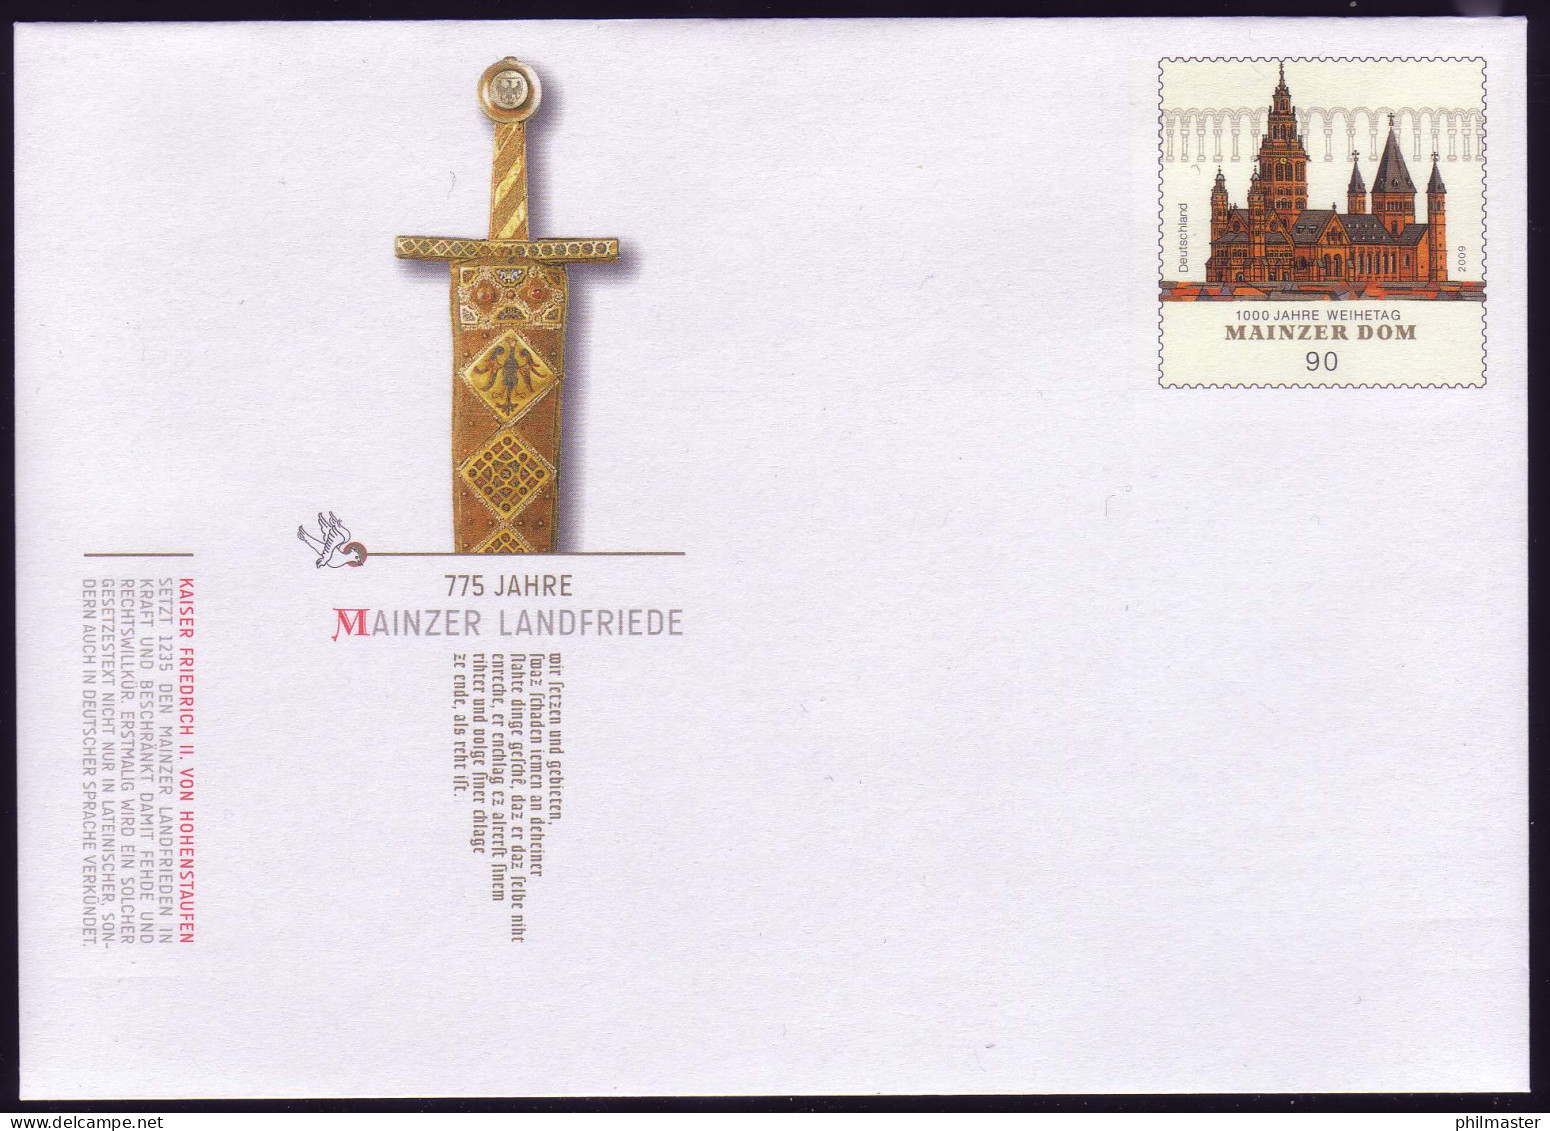 USo 210 75 Jahre Mainzer Landfriede 2010, Postfrisch - Enveloppes - Neuves